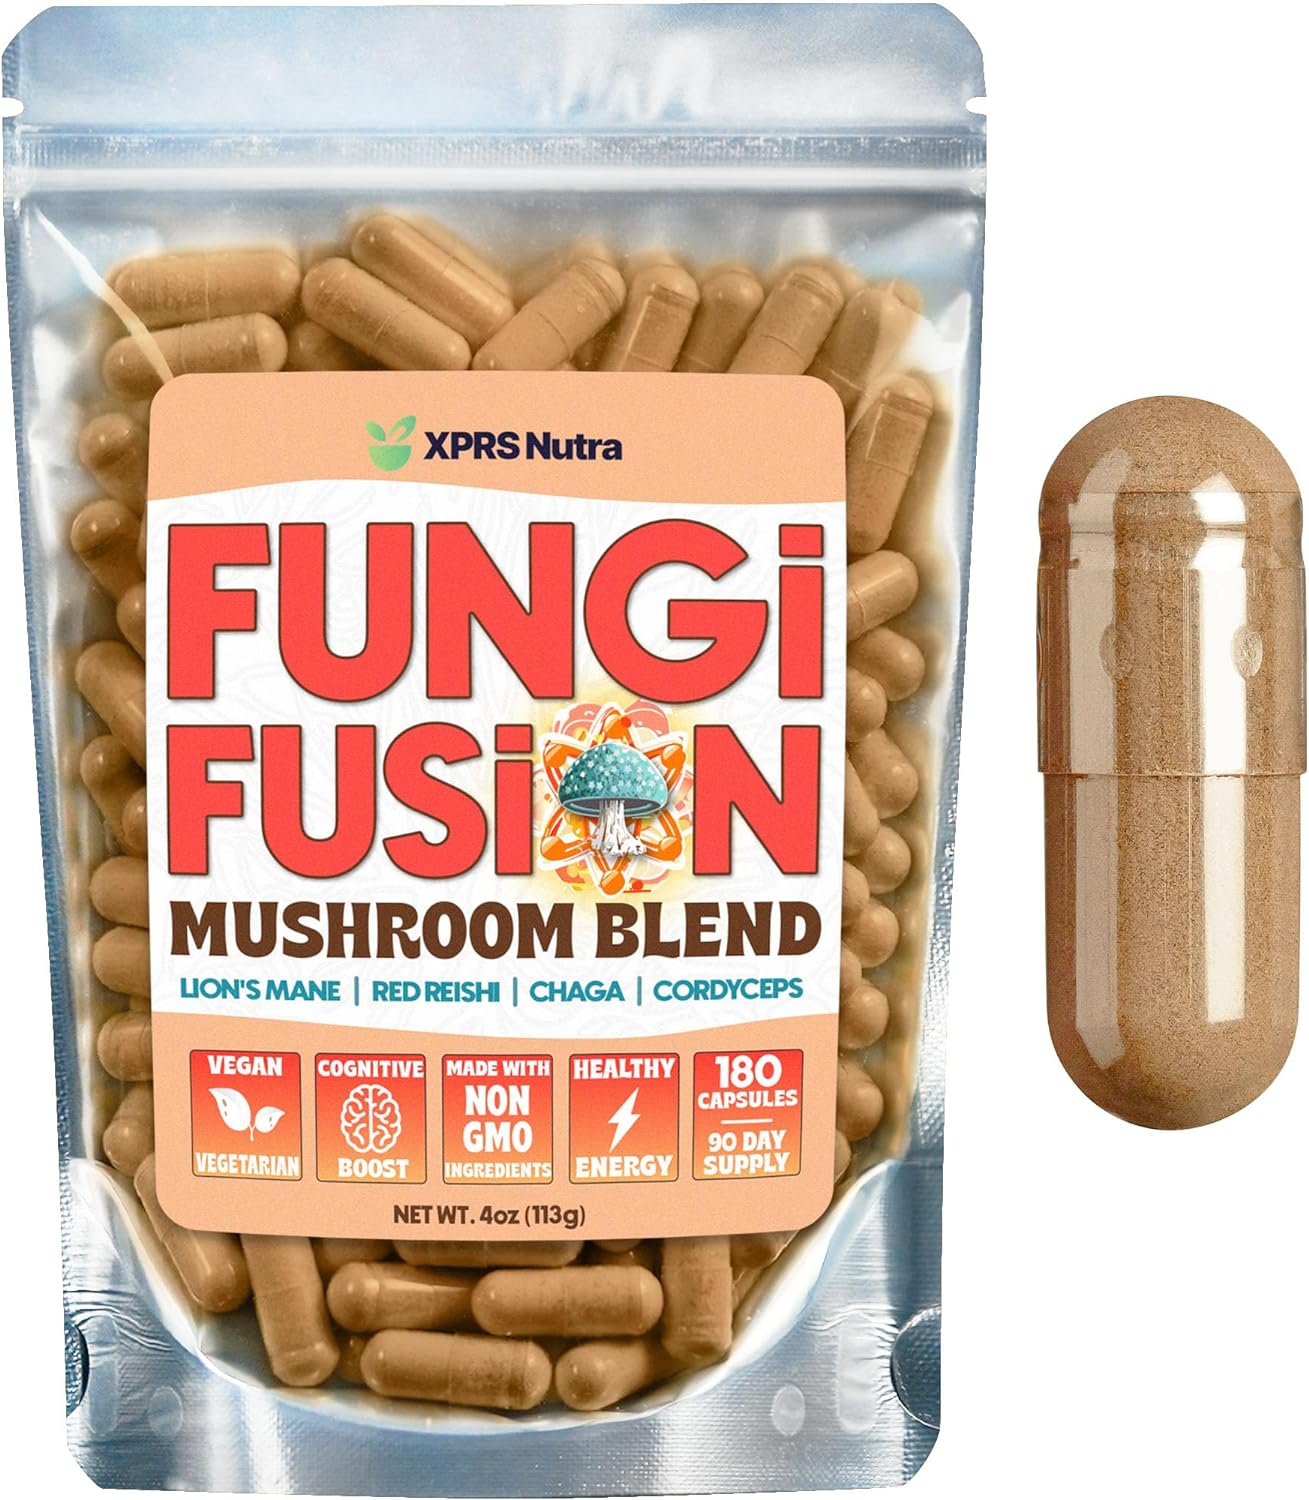 Fungi Fusion Mushroom Blend Capsules - Lion's Mane, Reishi, Chaga, Cordyceps